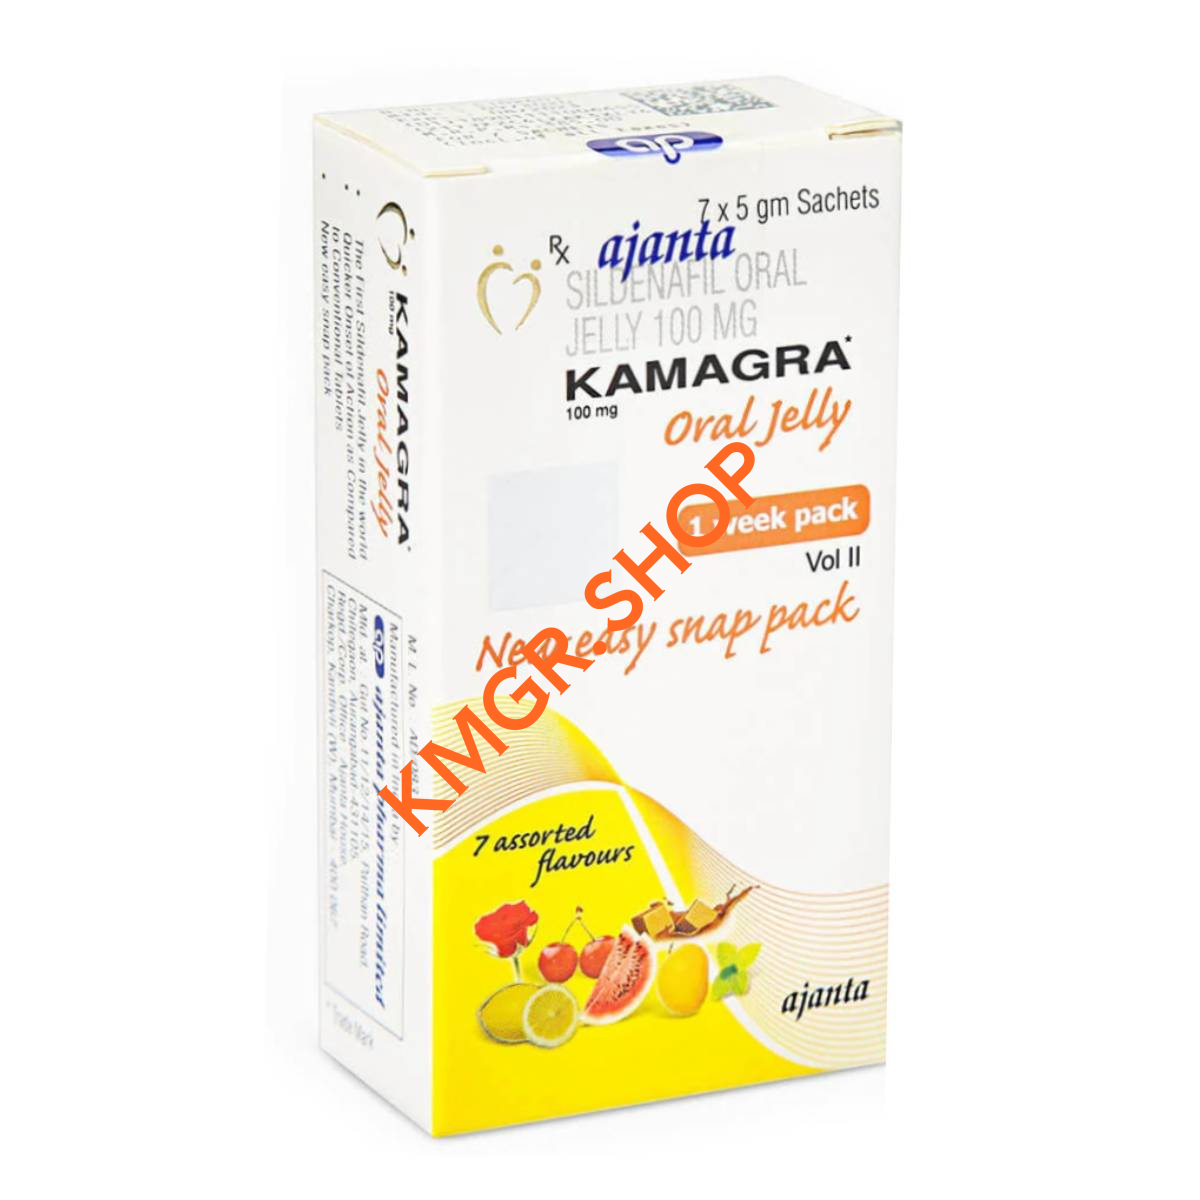 Kamagra oral jelly 100mg Vol II